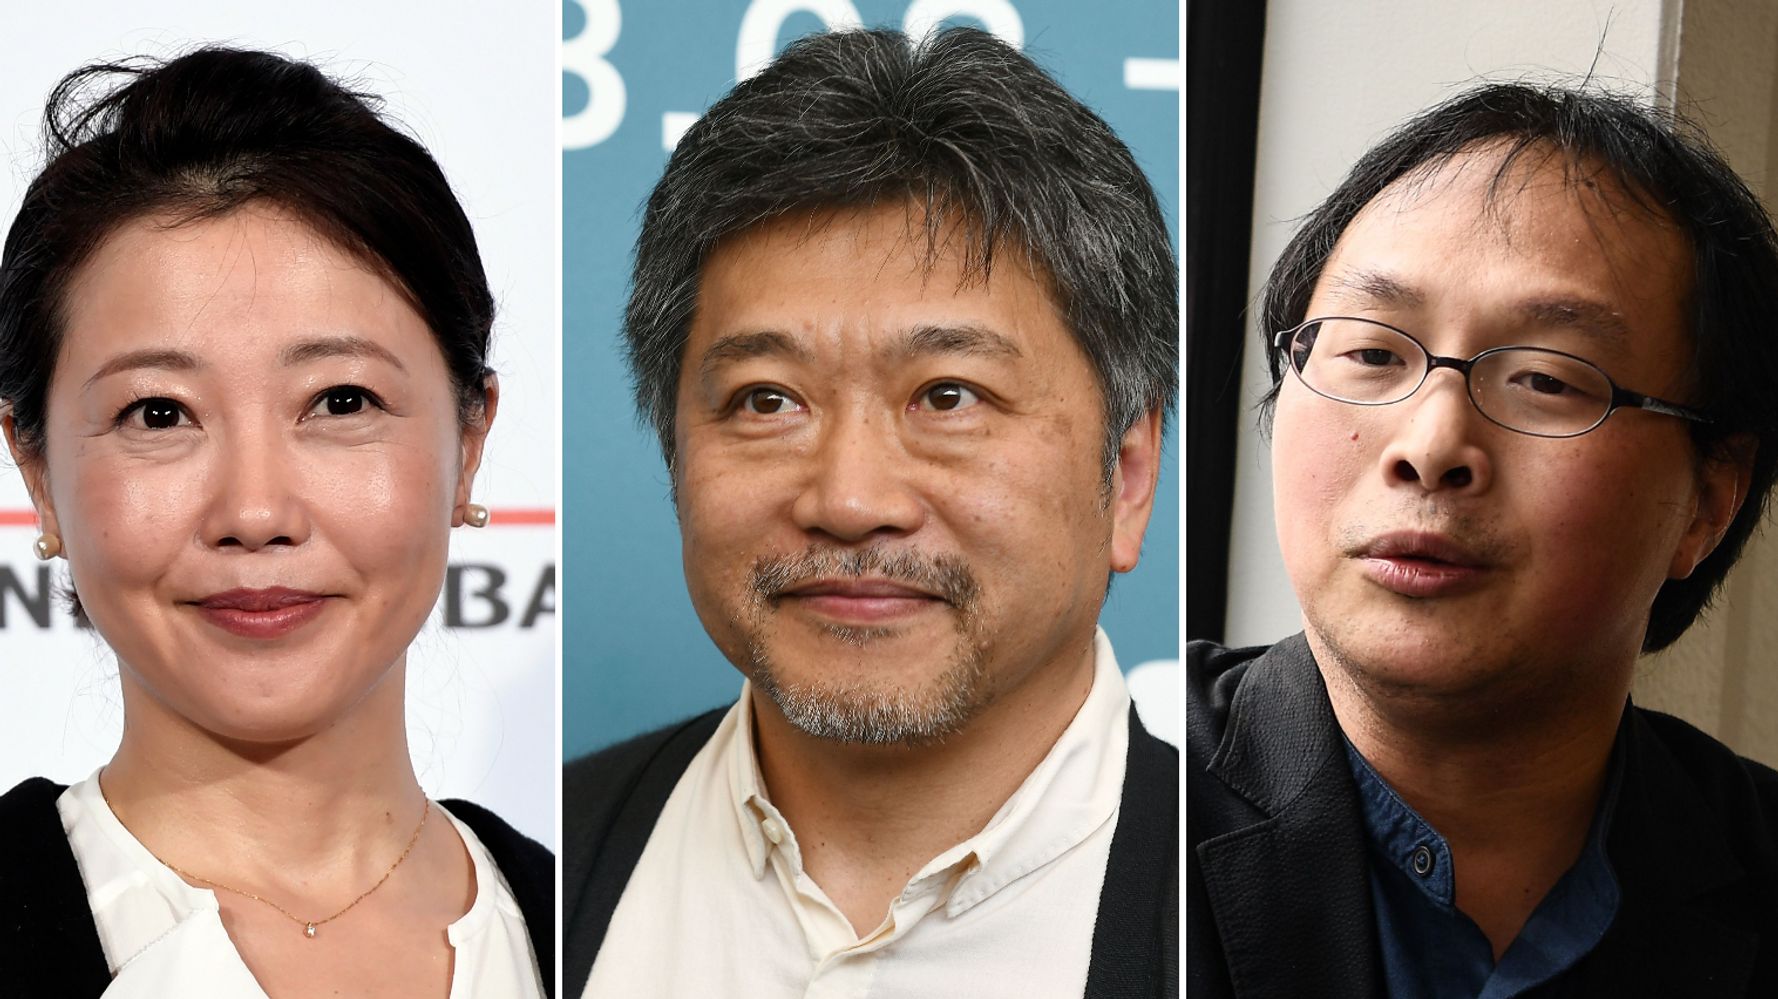 是枝裕和さんら映画監督6人が、立場利用した暴力に反対。業界の「悪しき慣習を断ち切る責任ある」と声明発表